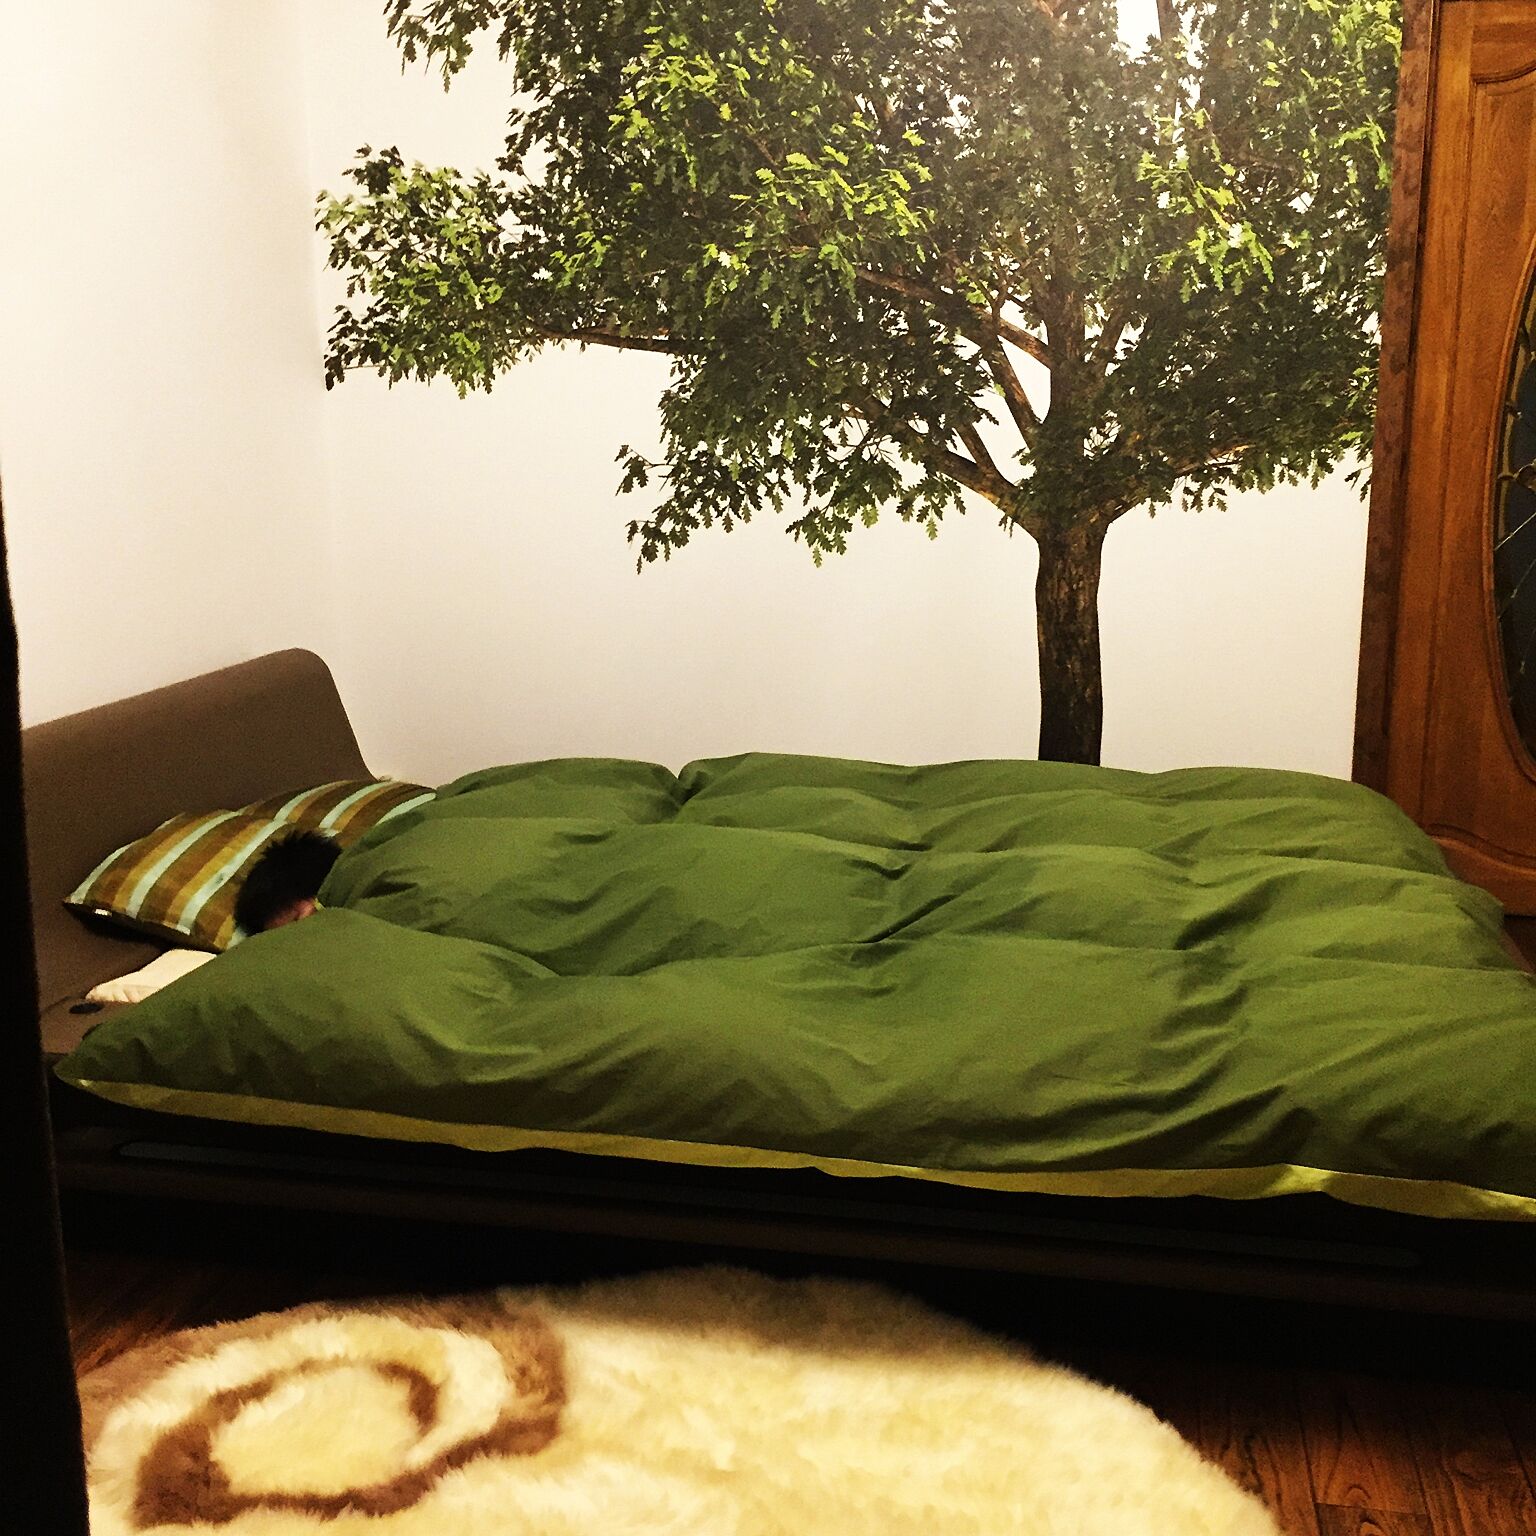 寝室を模様替え 安眠のためのアイディア10選 Roomclip Mag 暮らしとインテリアのwebマガジン